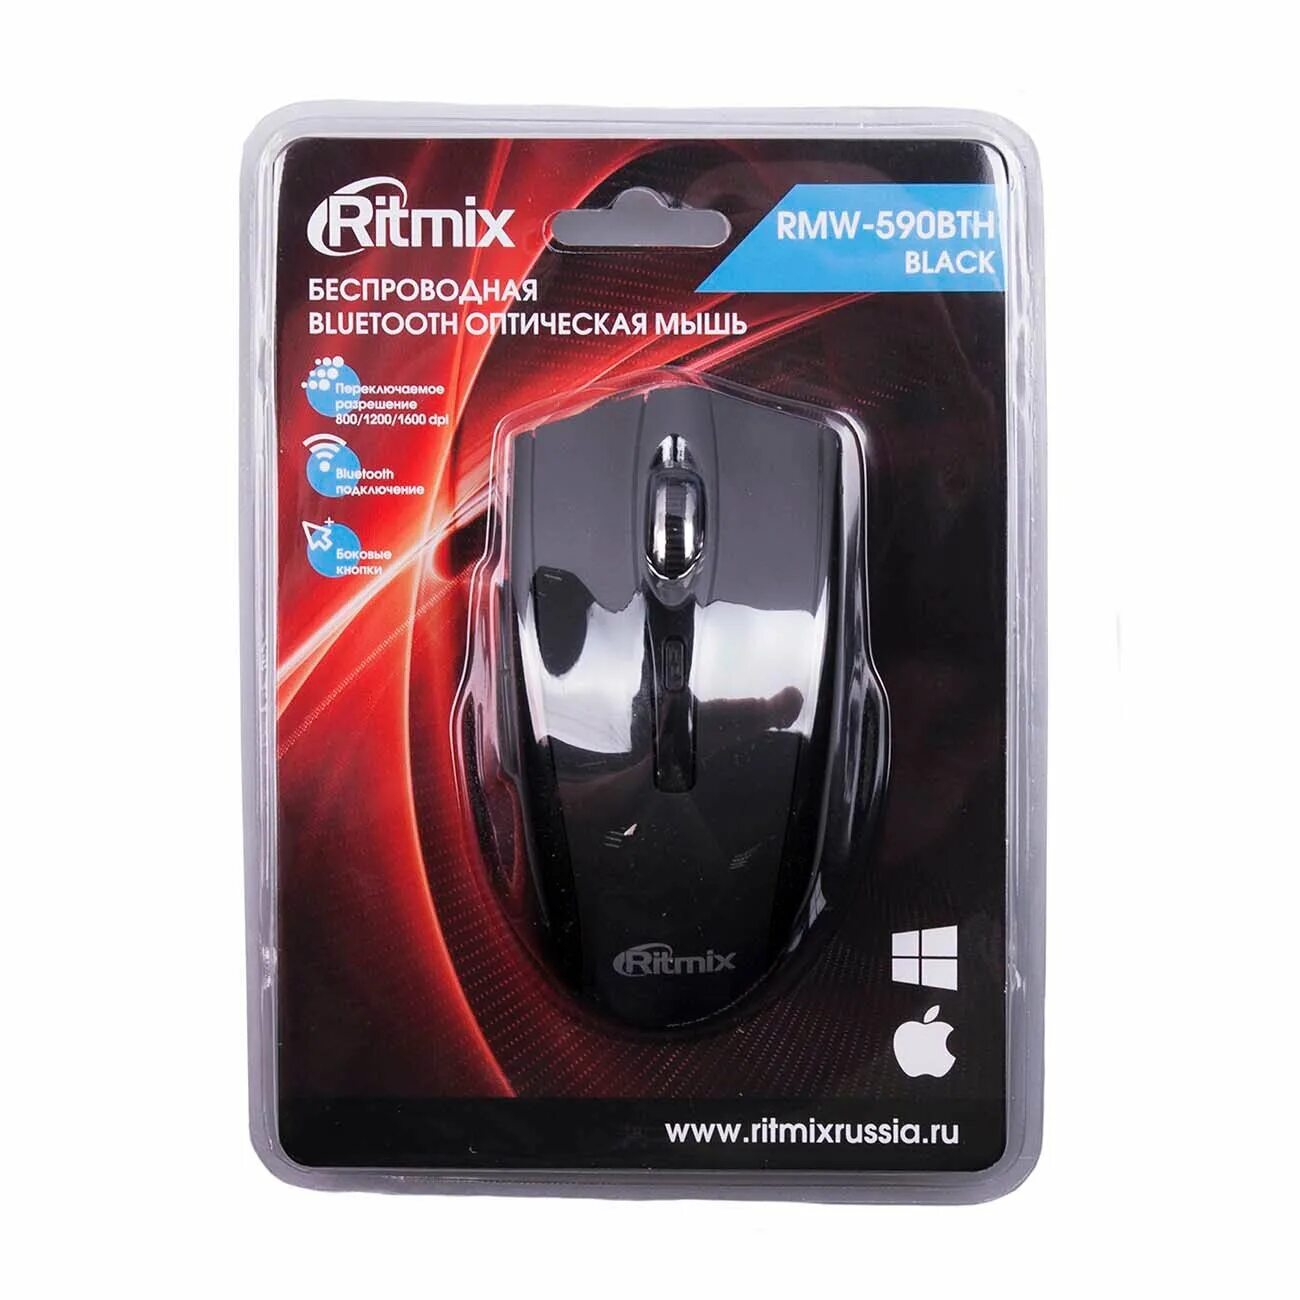 Мыши ritmix. Мышь Ritmix RMW-590bth Black Bluetooth. Мышь беспроводная Ritmix RMW-590. Мышь проводная Ritmix RMW-363. Мышь беспроводная Ritmix снизу.